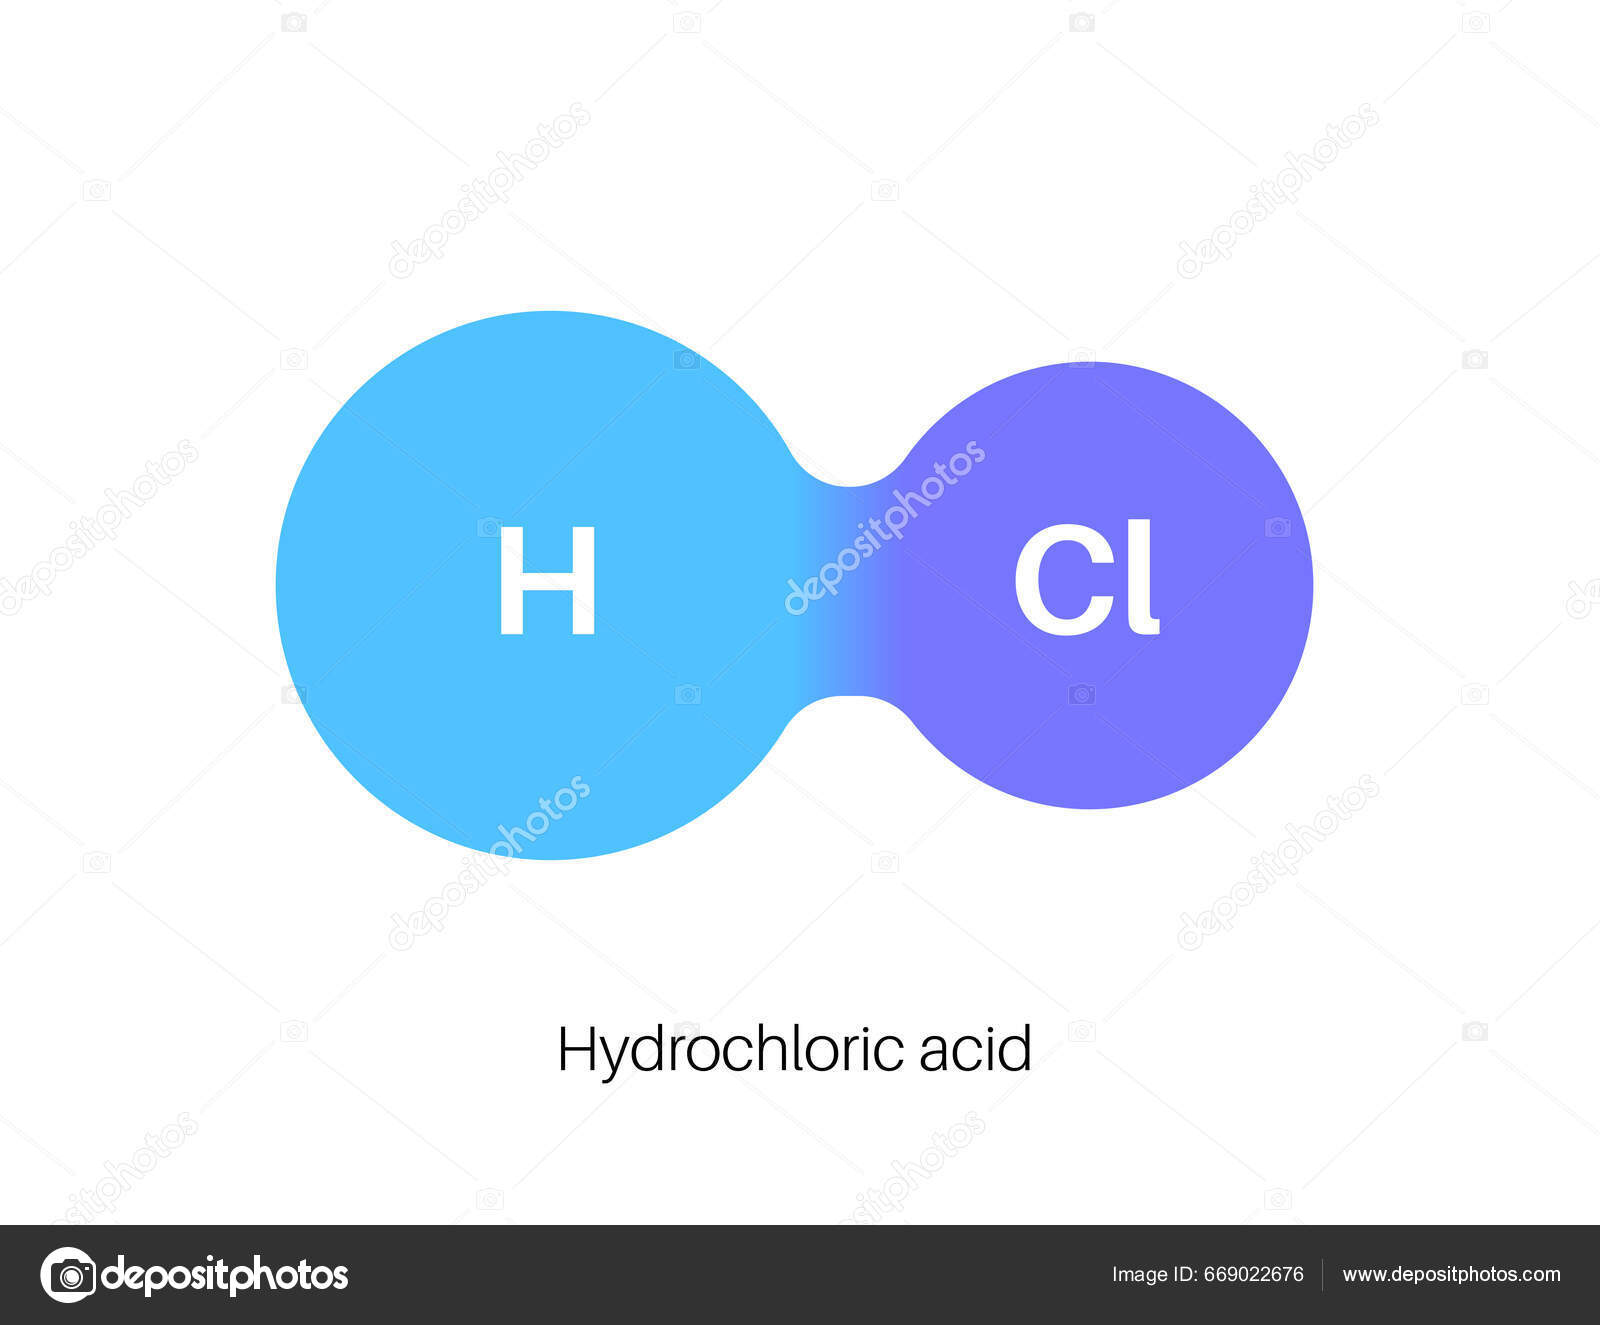 Acide Chlorhydrique - HCl